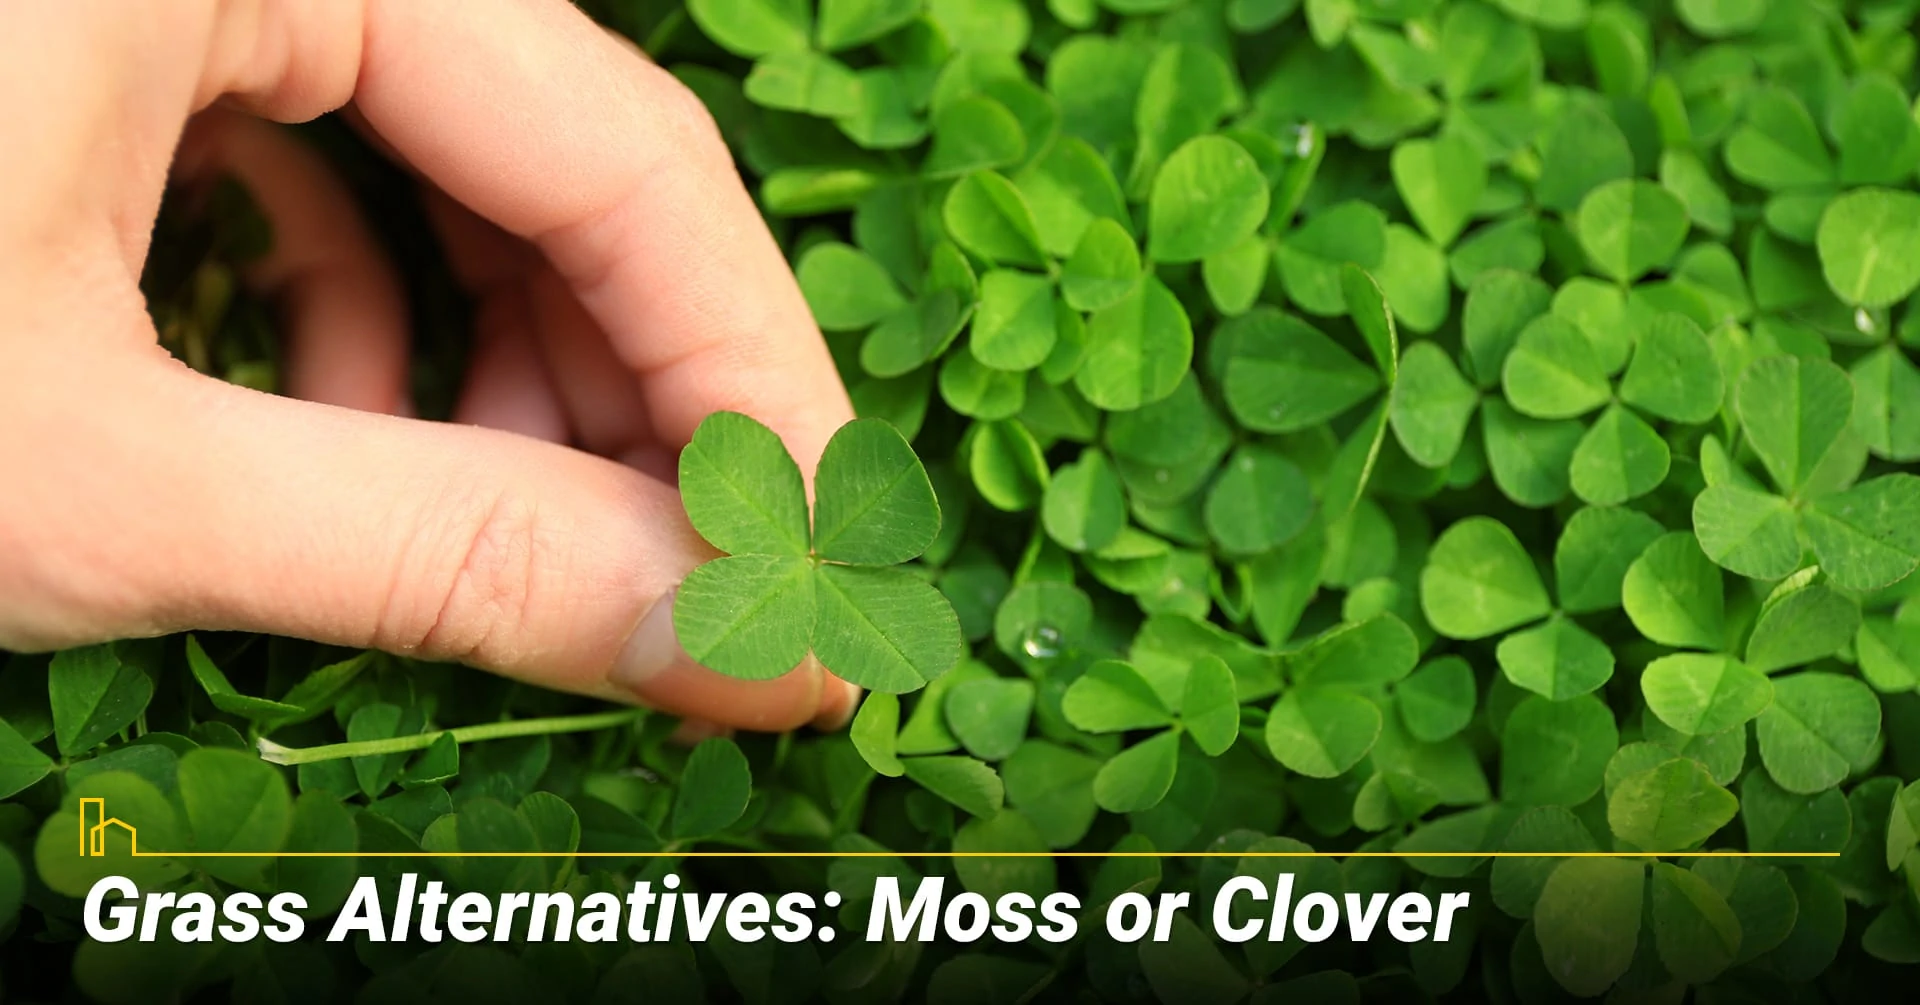 Grass Alternatives: Moss or Clover